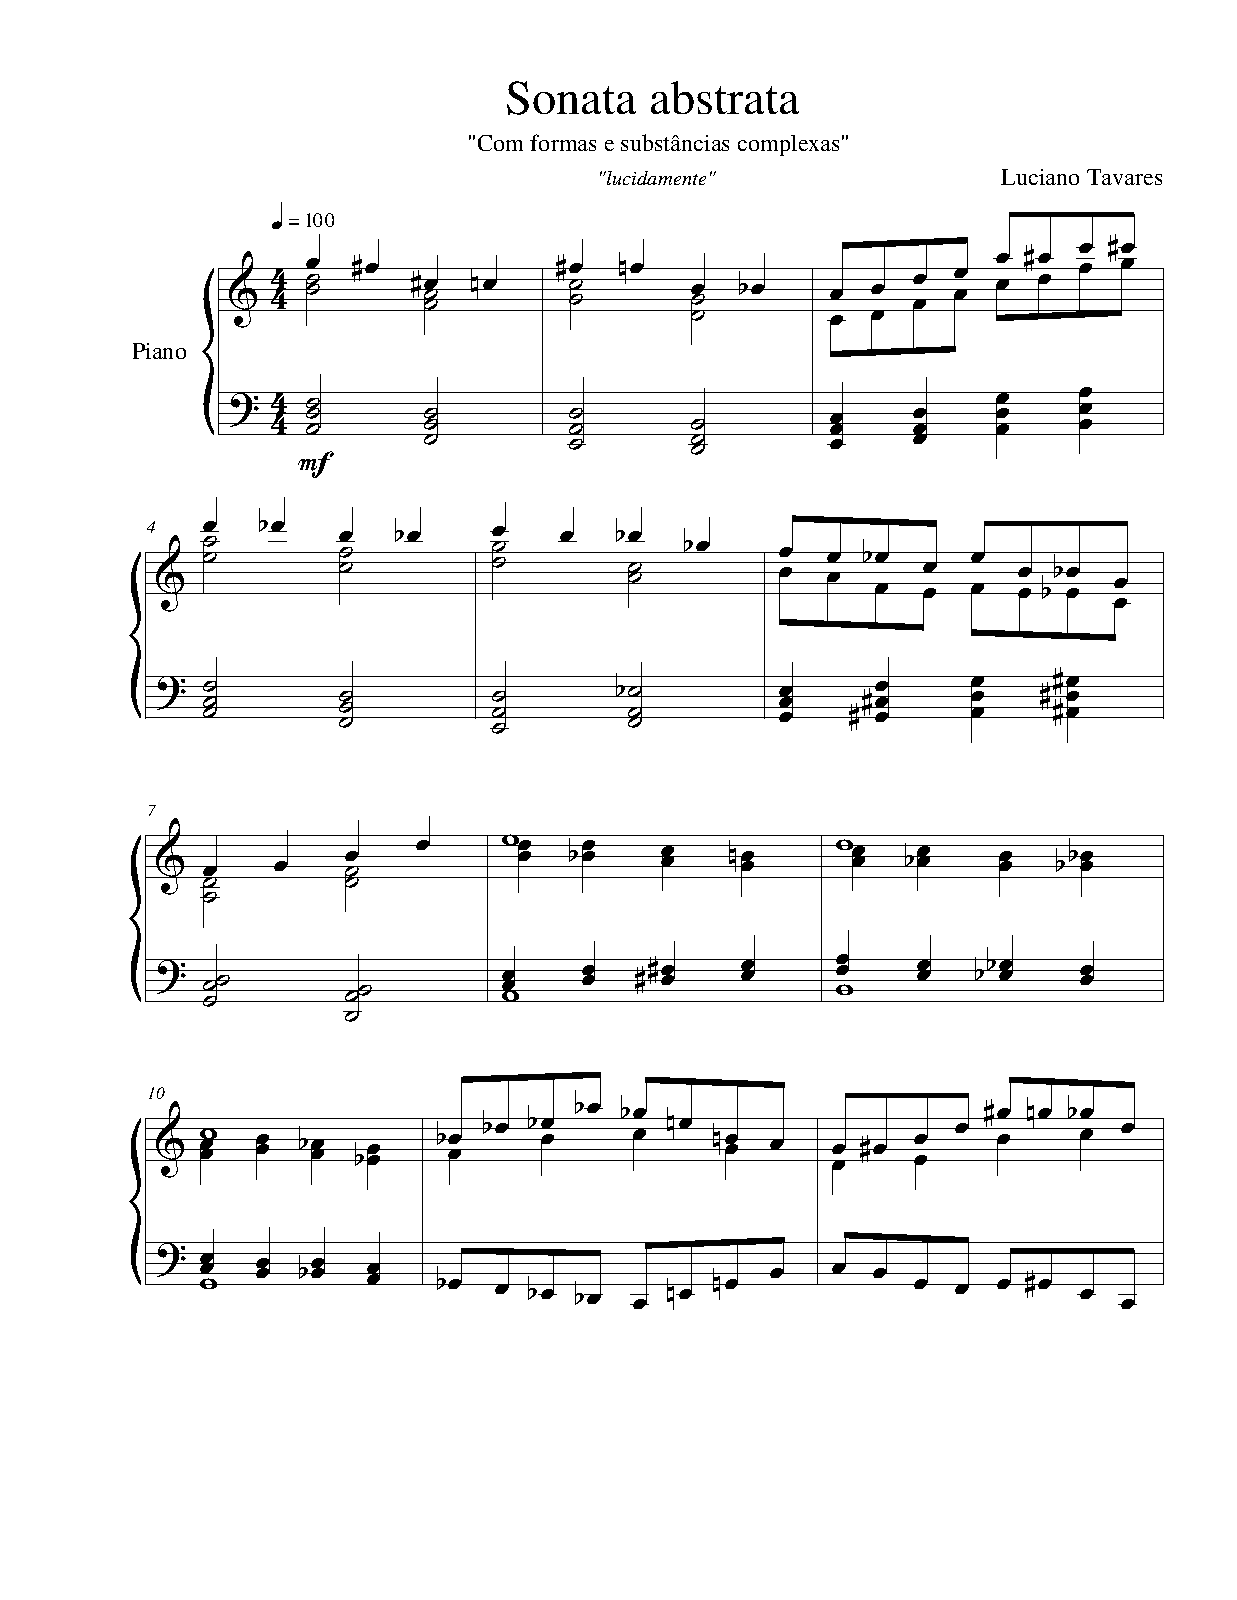 Sonata abstrata (Tavares, Luciano) - IMSLP